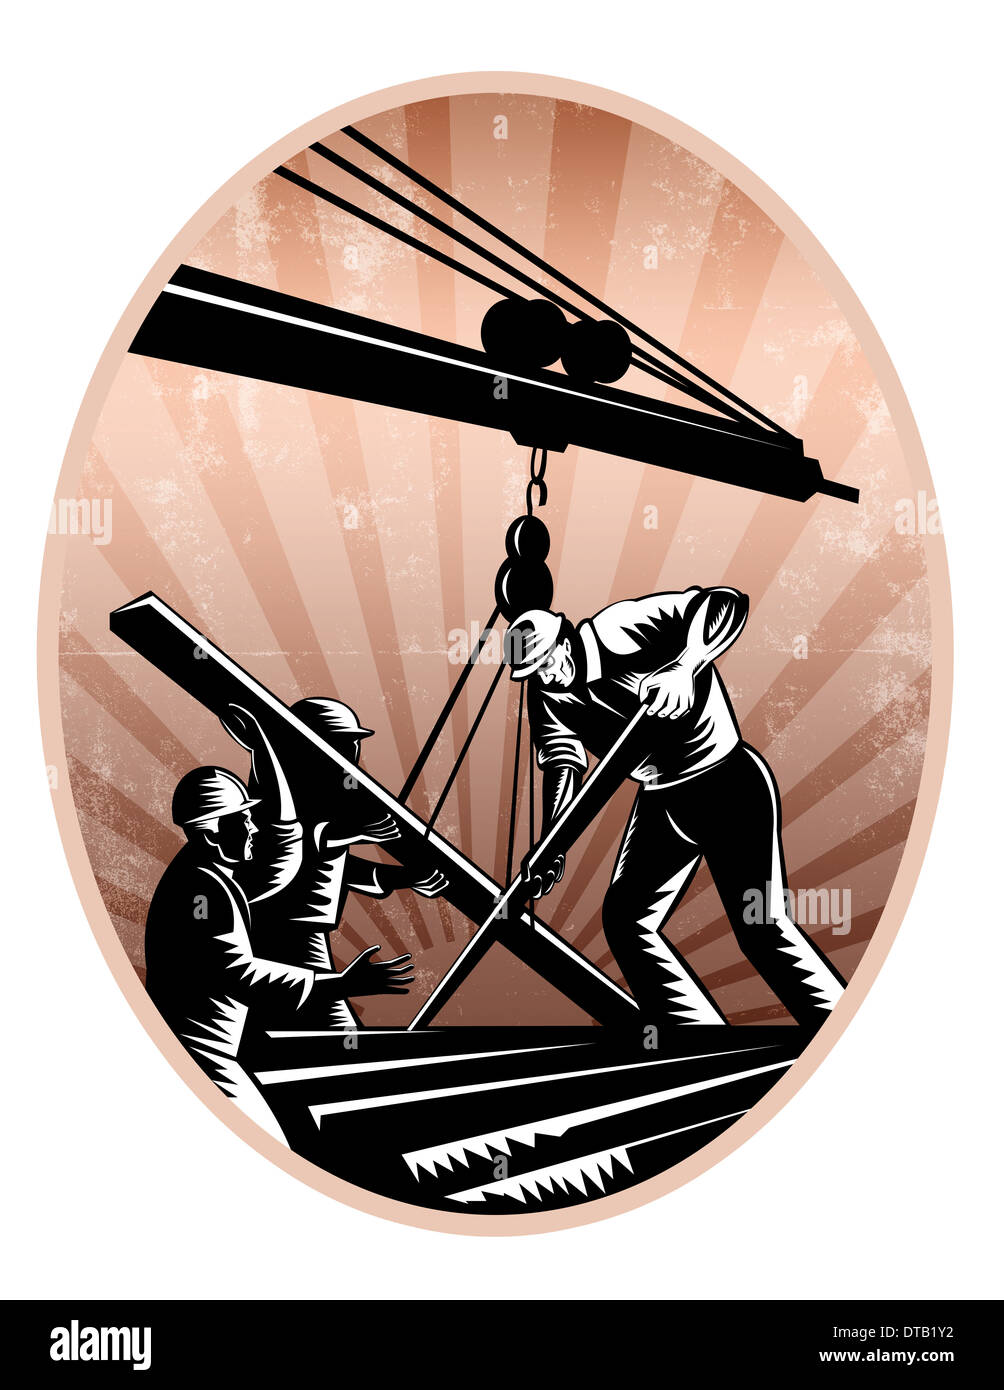 Abbildung eines Teams von Bauarbeitern Bauarbeiterhelm arbeiten am Stahlträger auf Kranausleger in Retro-Holzschnitt Stil getan Heben zu tragen. Stockfoto